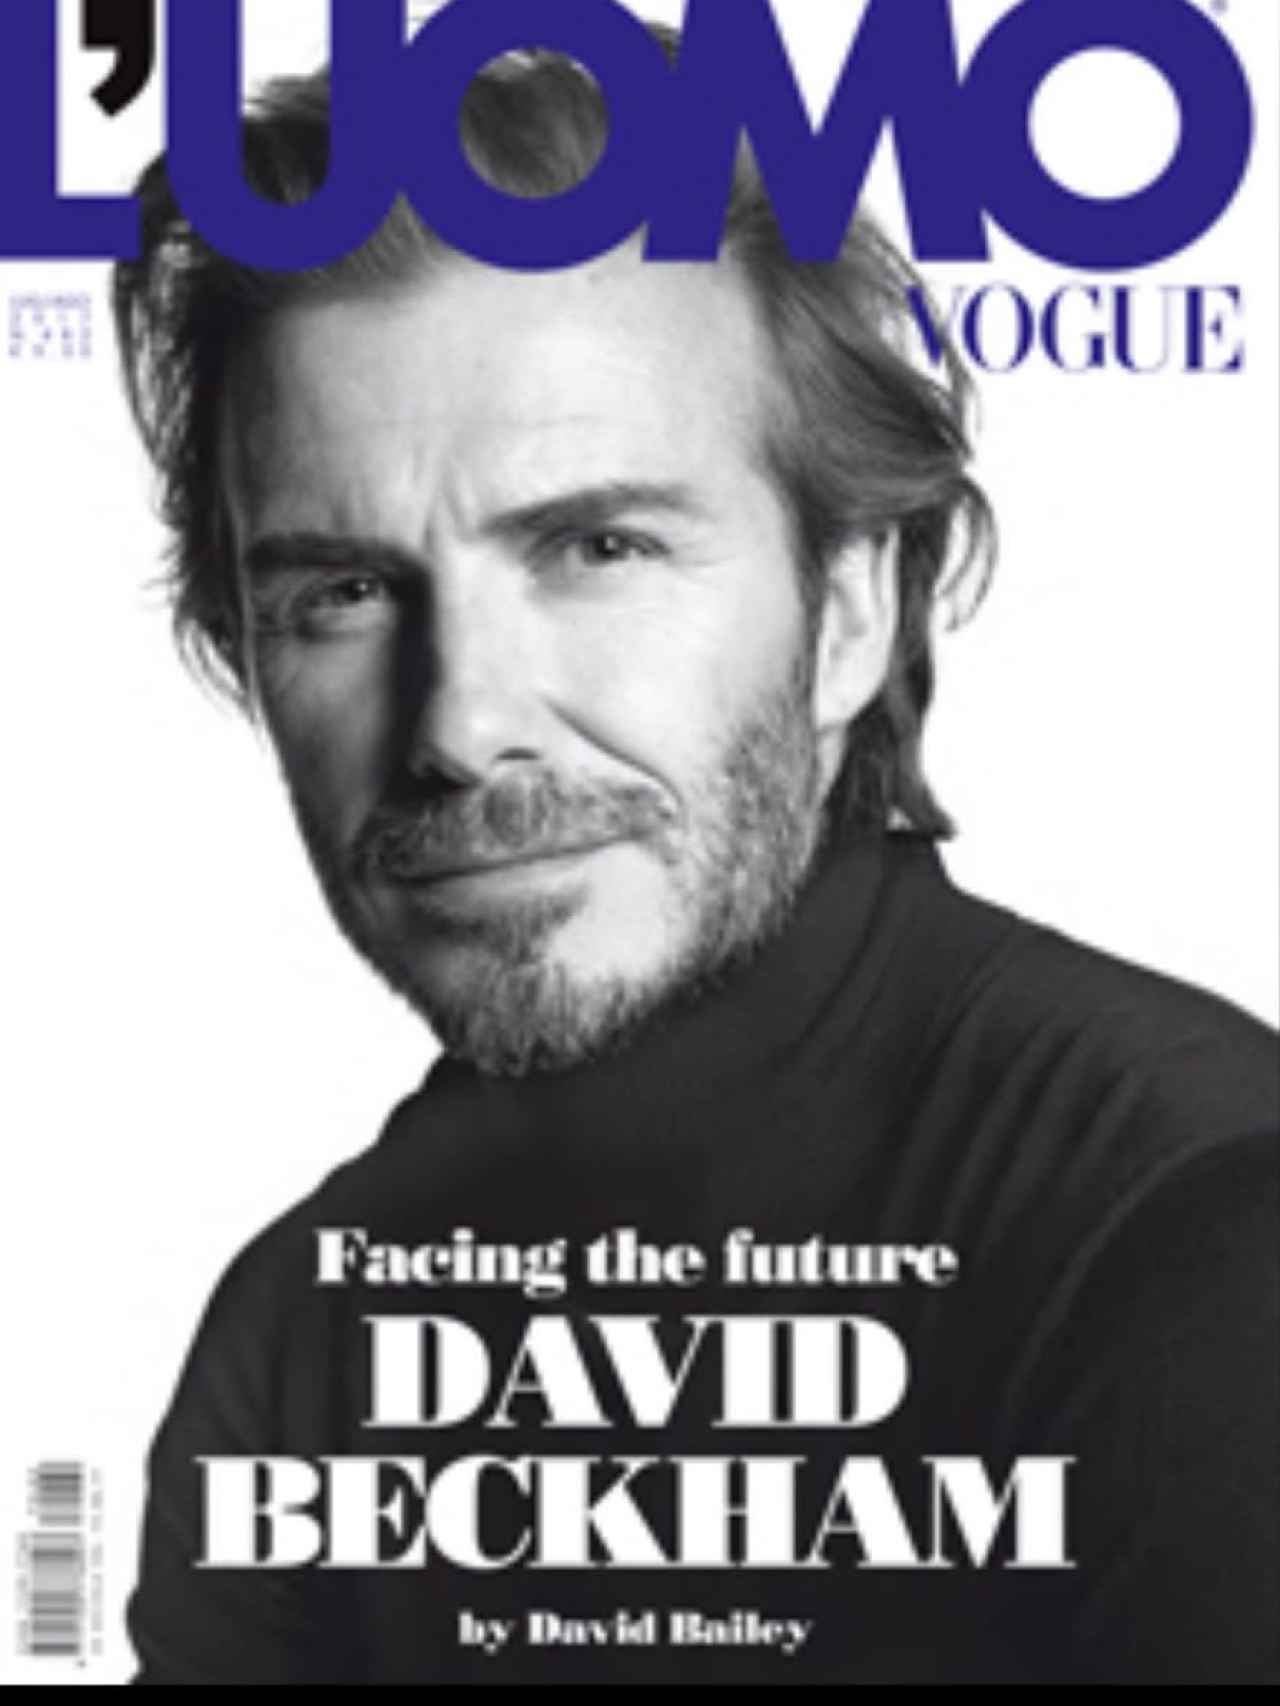 Portada de L'Uomo Vogue con David Beckham.